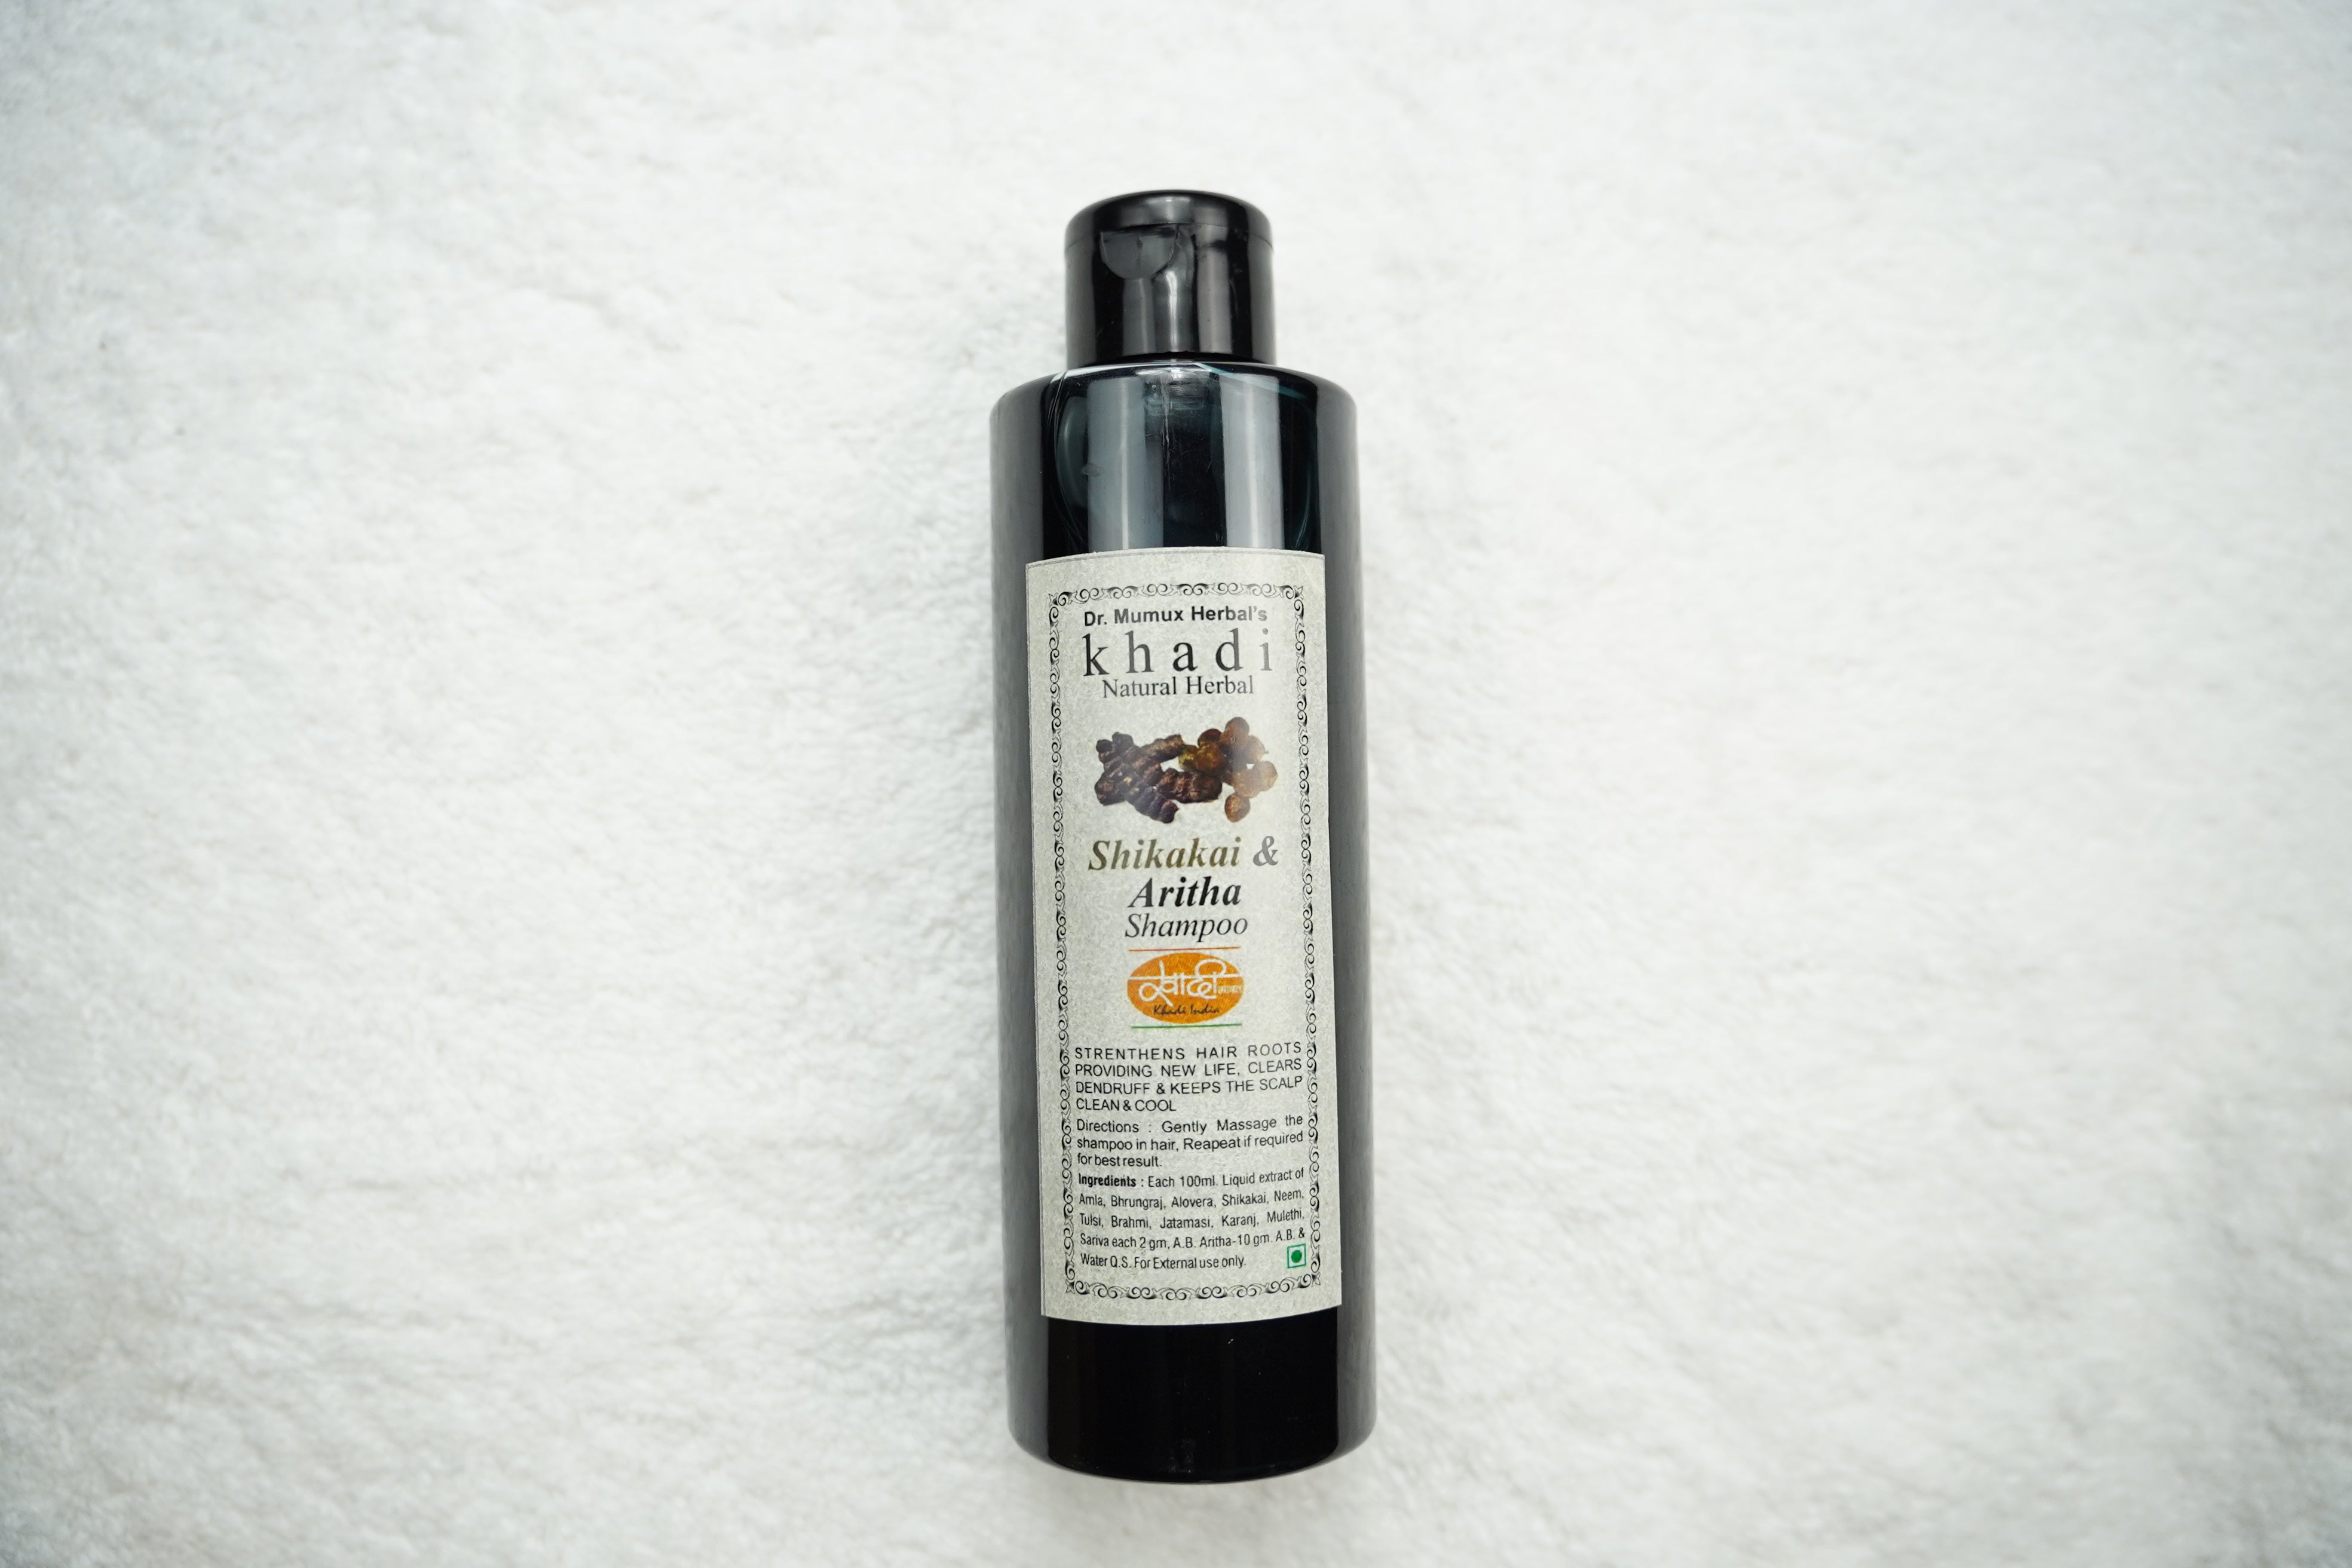 Khadi India: Herbal Shampoo with Shikakai & Aritha - A Natural Cleanse for Your Hair! 200ml/6.8oz